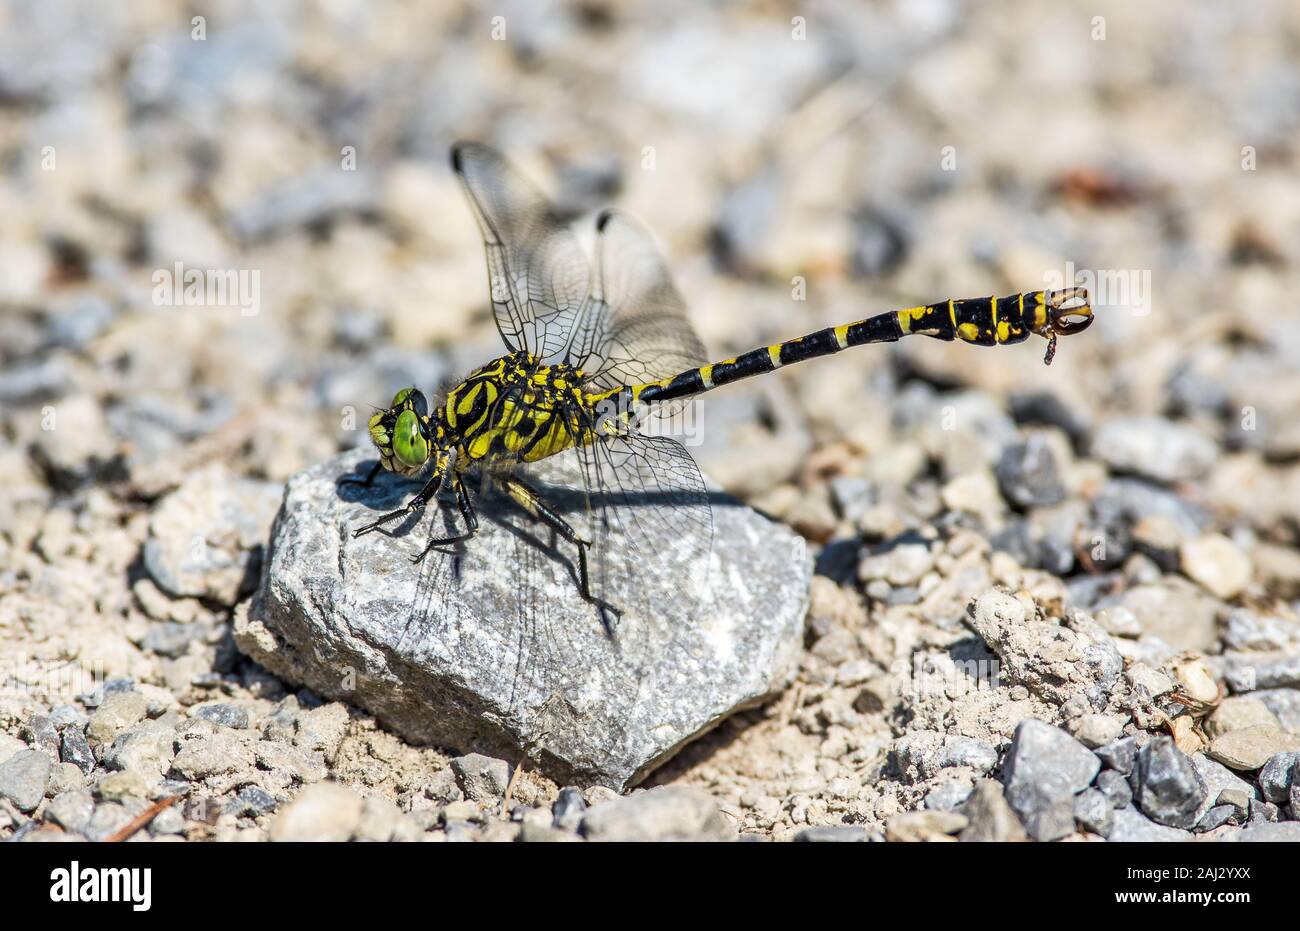 Ojos verdes colas gancho Dragonfly es un antiguo insecto. Las características de la libélula macho apéndices en forma de gancho. Rara. Los ojos compuestos de color verde, amarillo cuerpo. Foto de stock